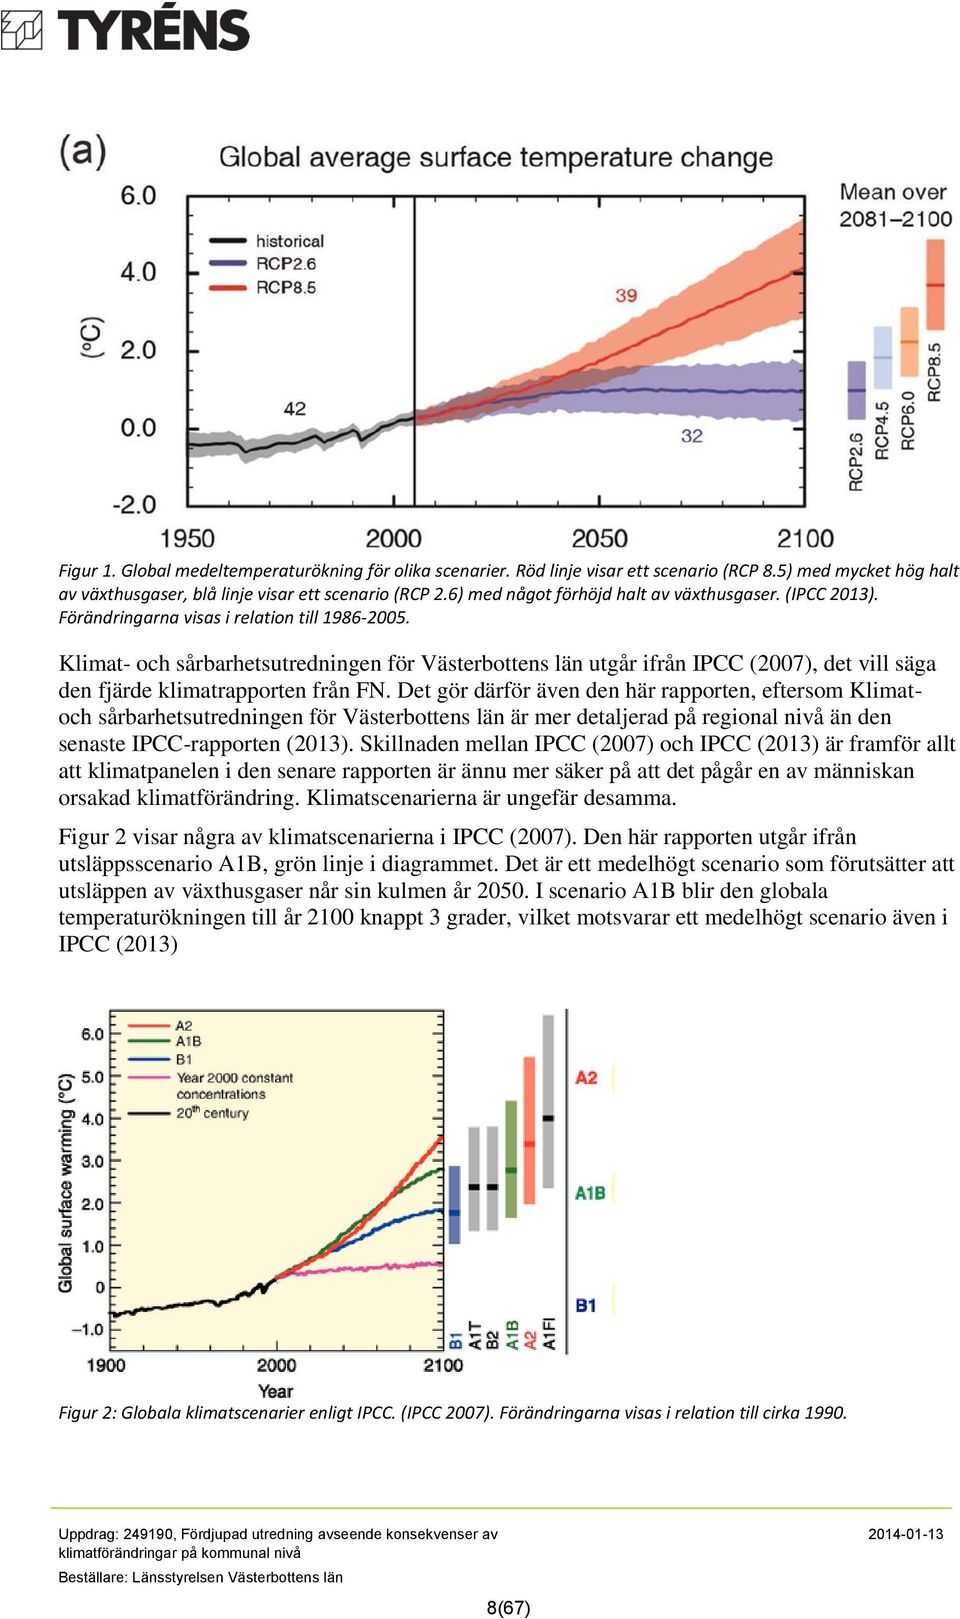 Klimat- och sårbarhetsutredningen för Västerbottens län utgår ifrån IPCC (2007), det vill säga den fjärde klimatrapporten från FN.